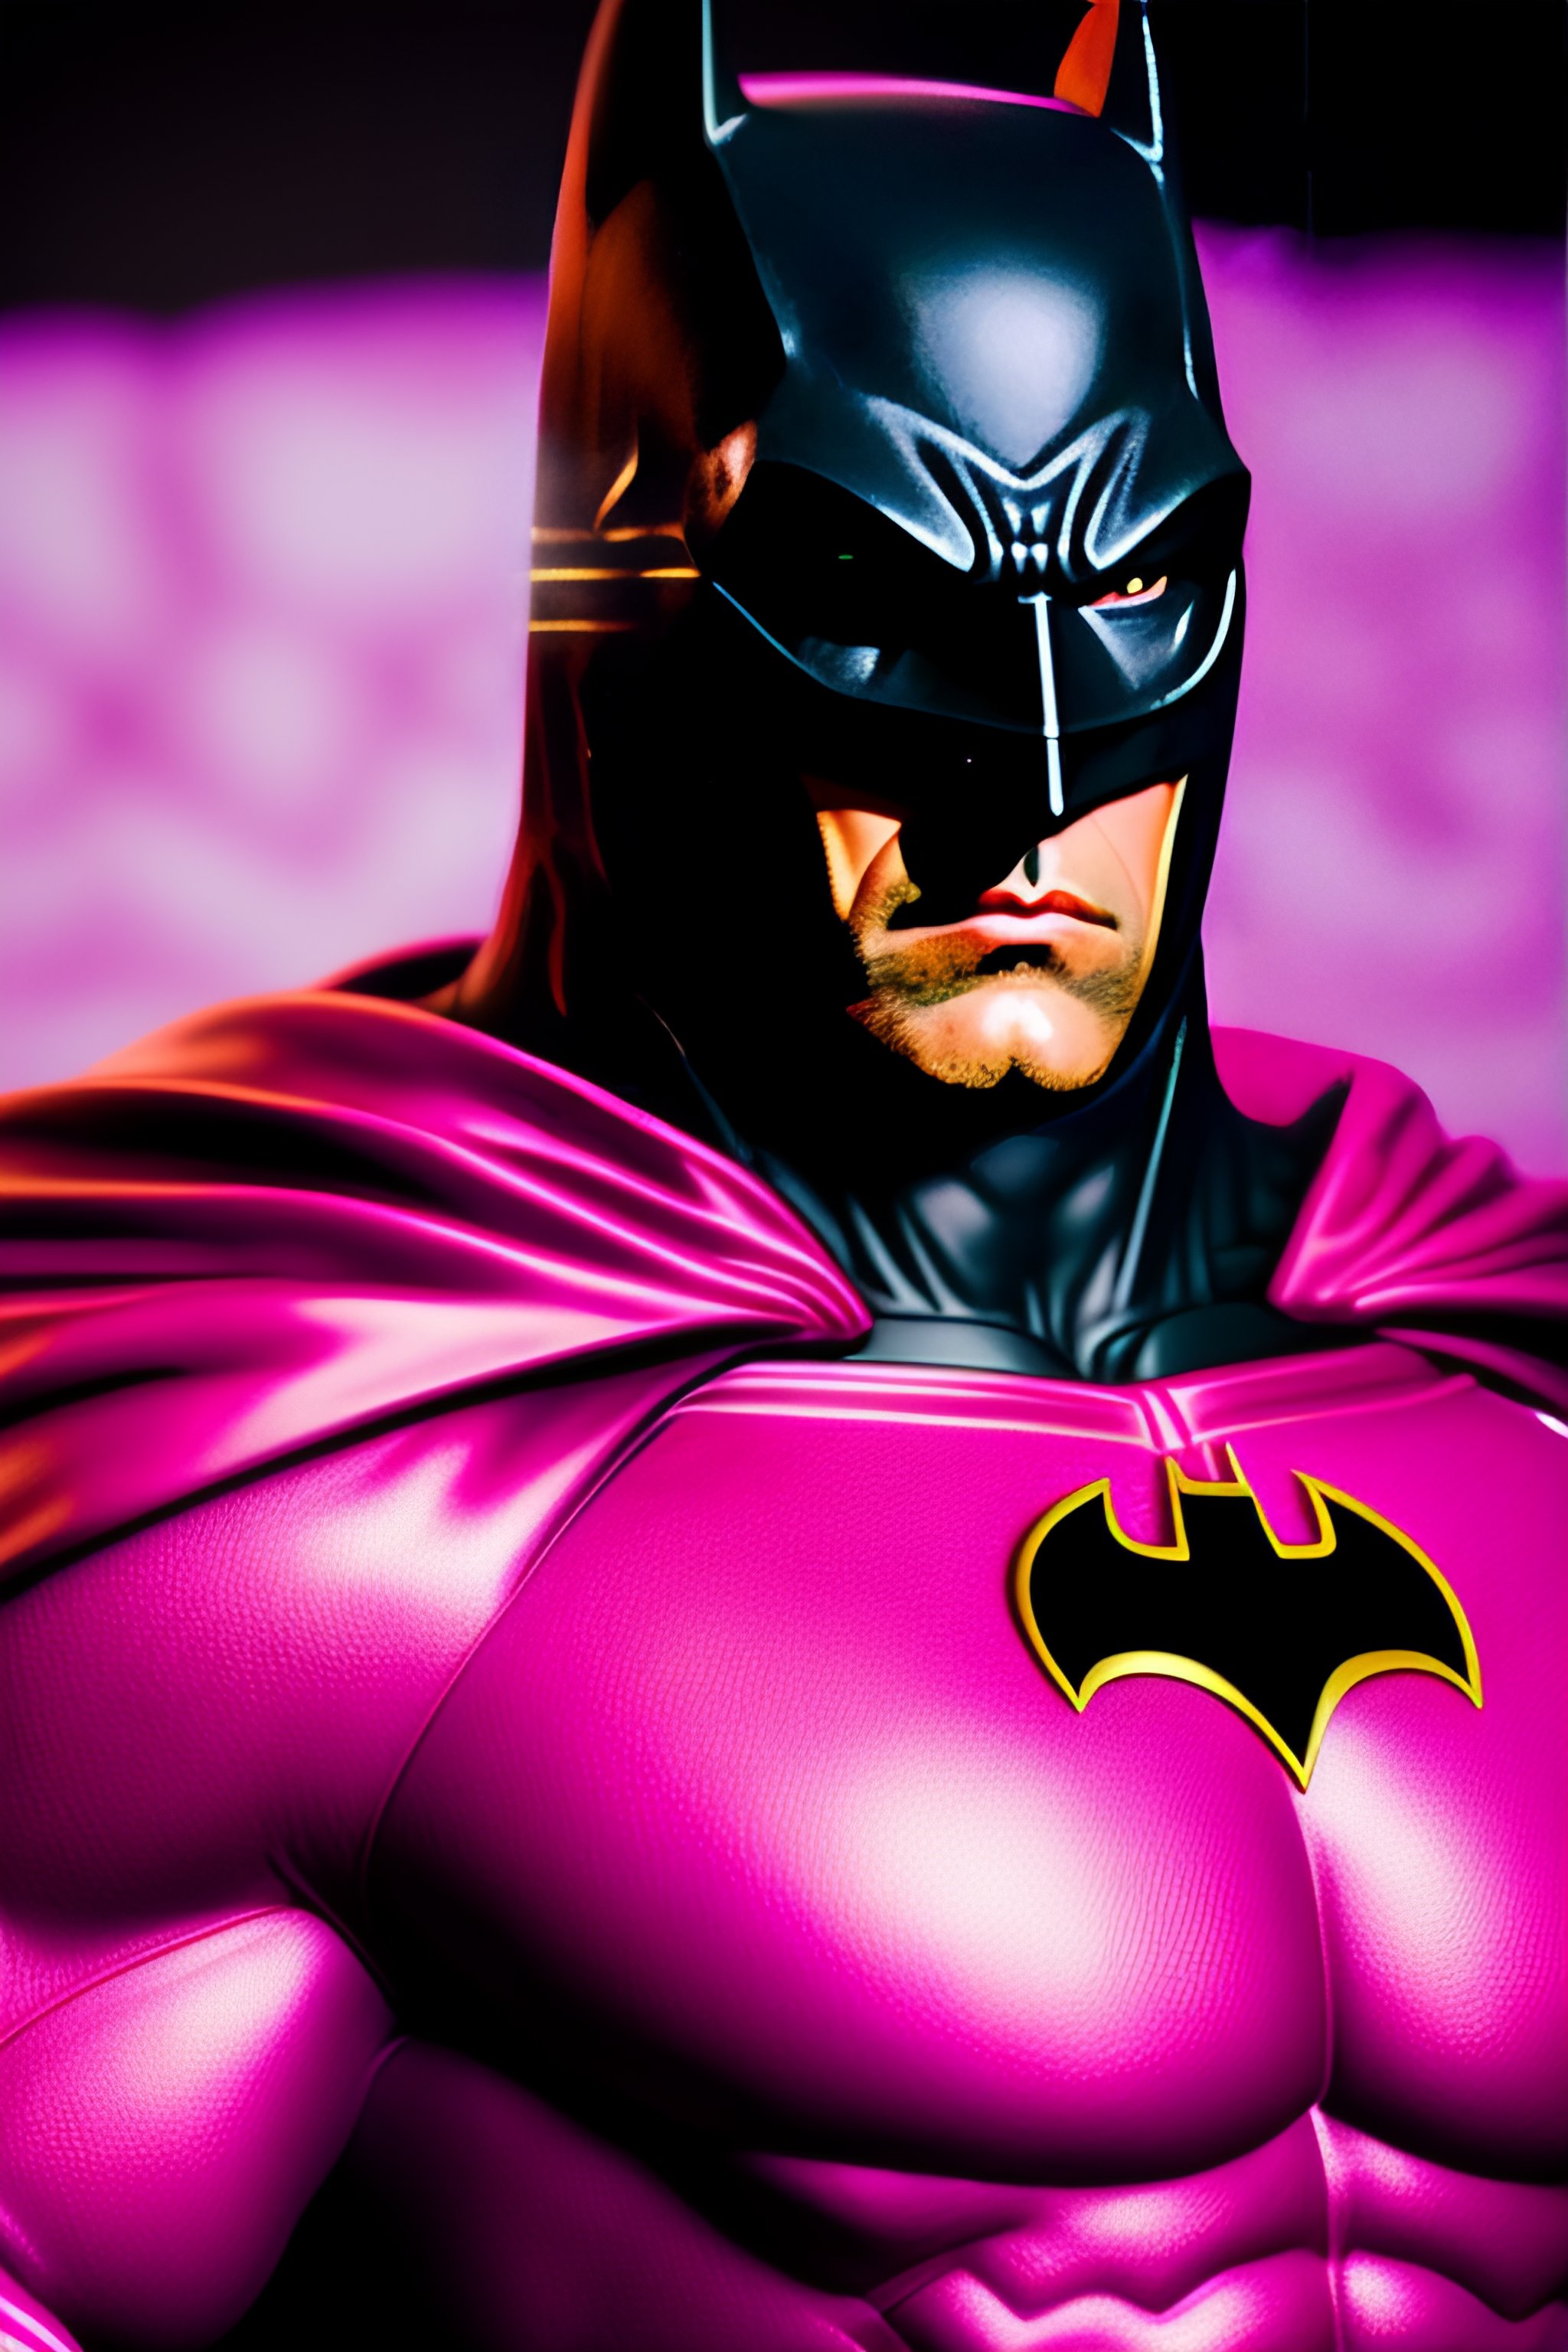 Lexica - Batman in a pink suit